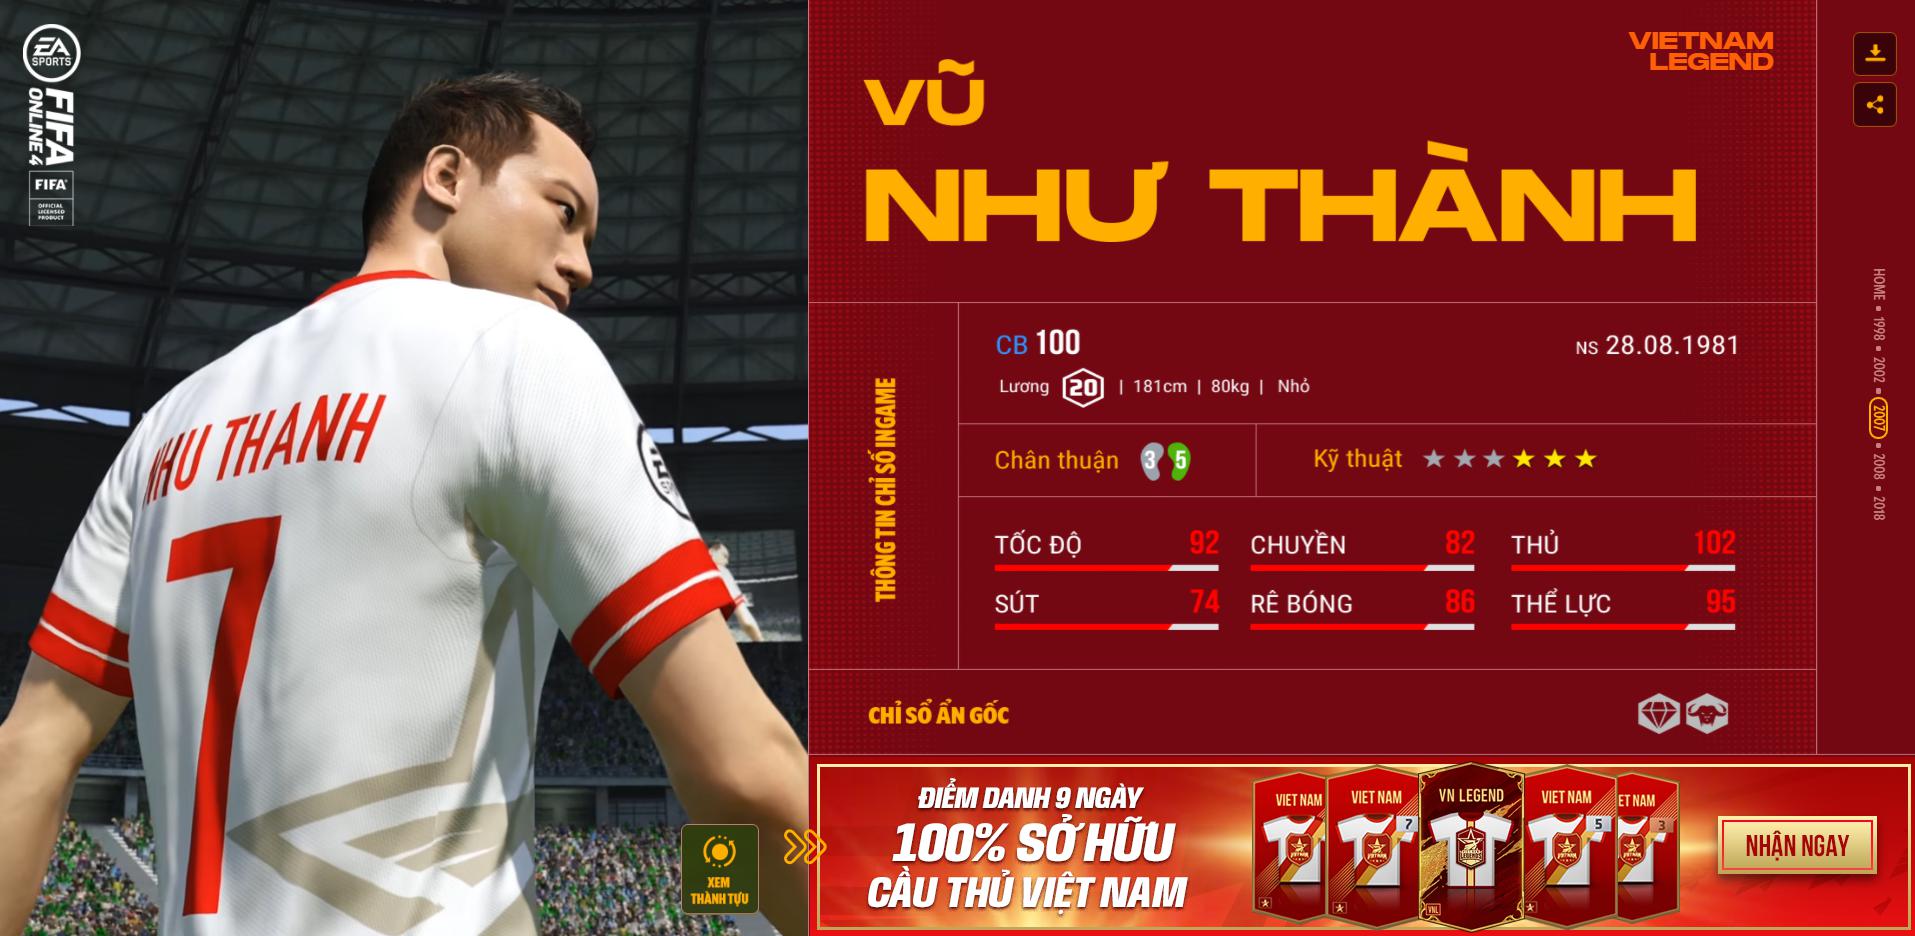 Hồng Sơn và các huyền thoại bóng đá Việt Nam bất ngờ xuất hiện trong FIFA Online 4 - Ảnh 7.